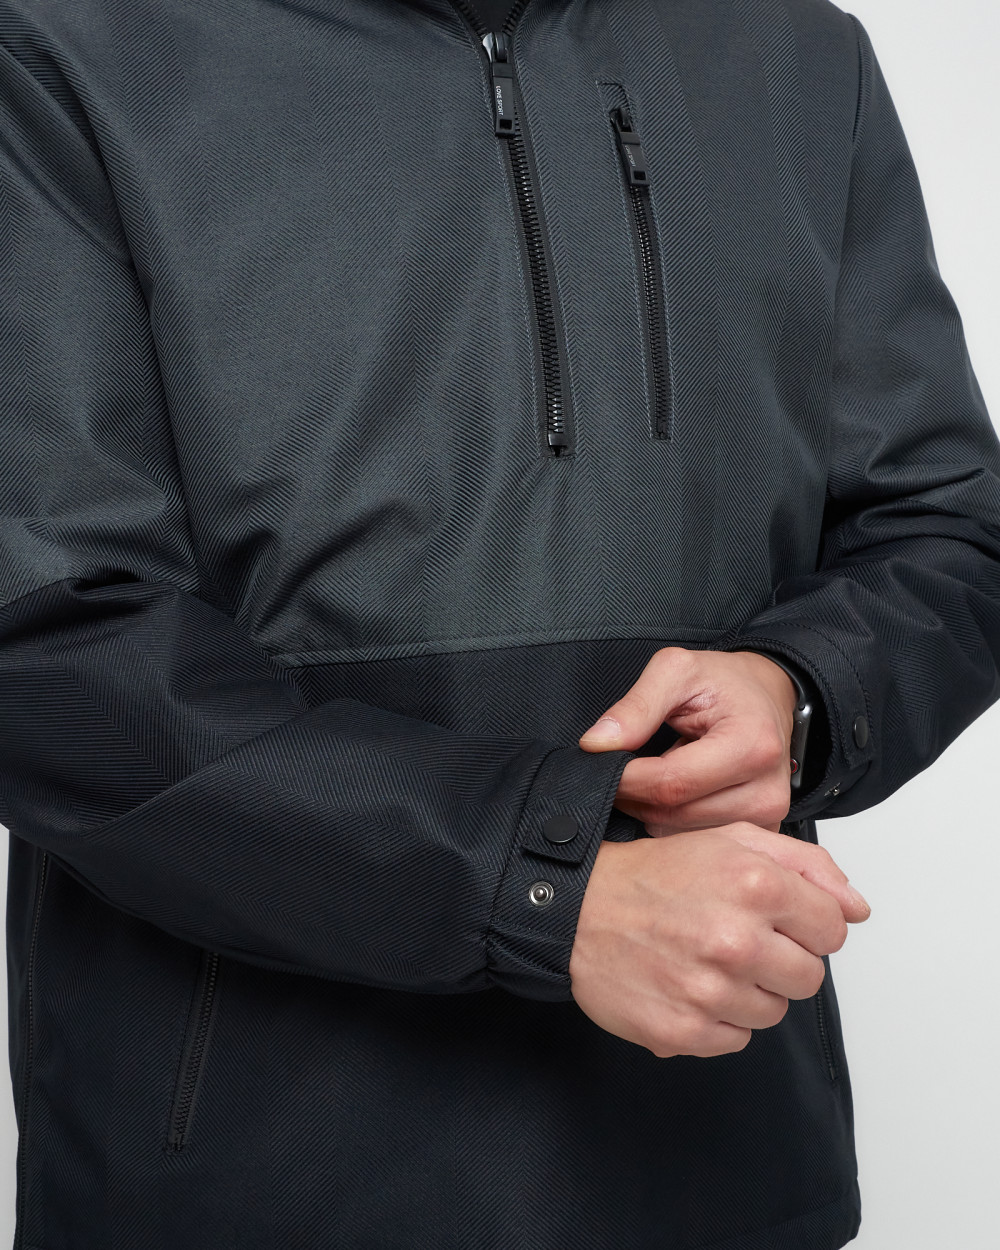 Купить куртку анорак спортивную мужскую оптом от производителя недорого в Москве 3307TC 1